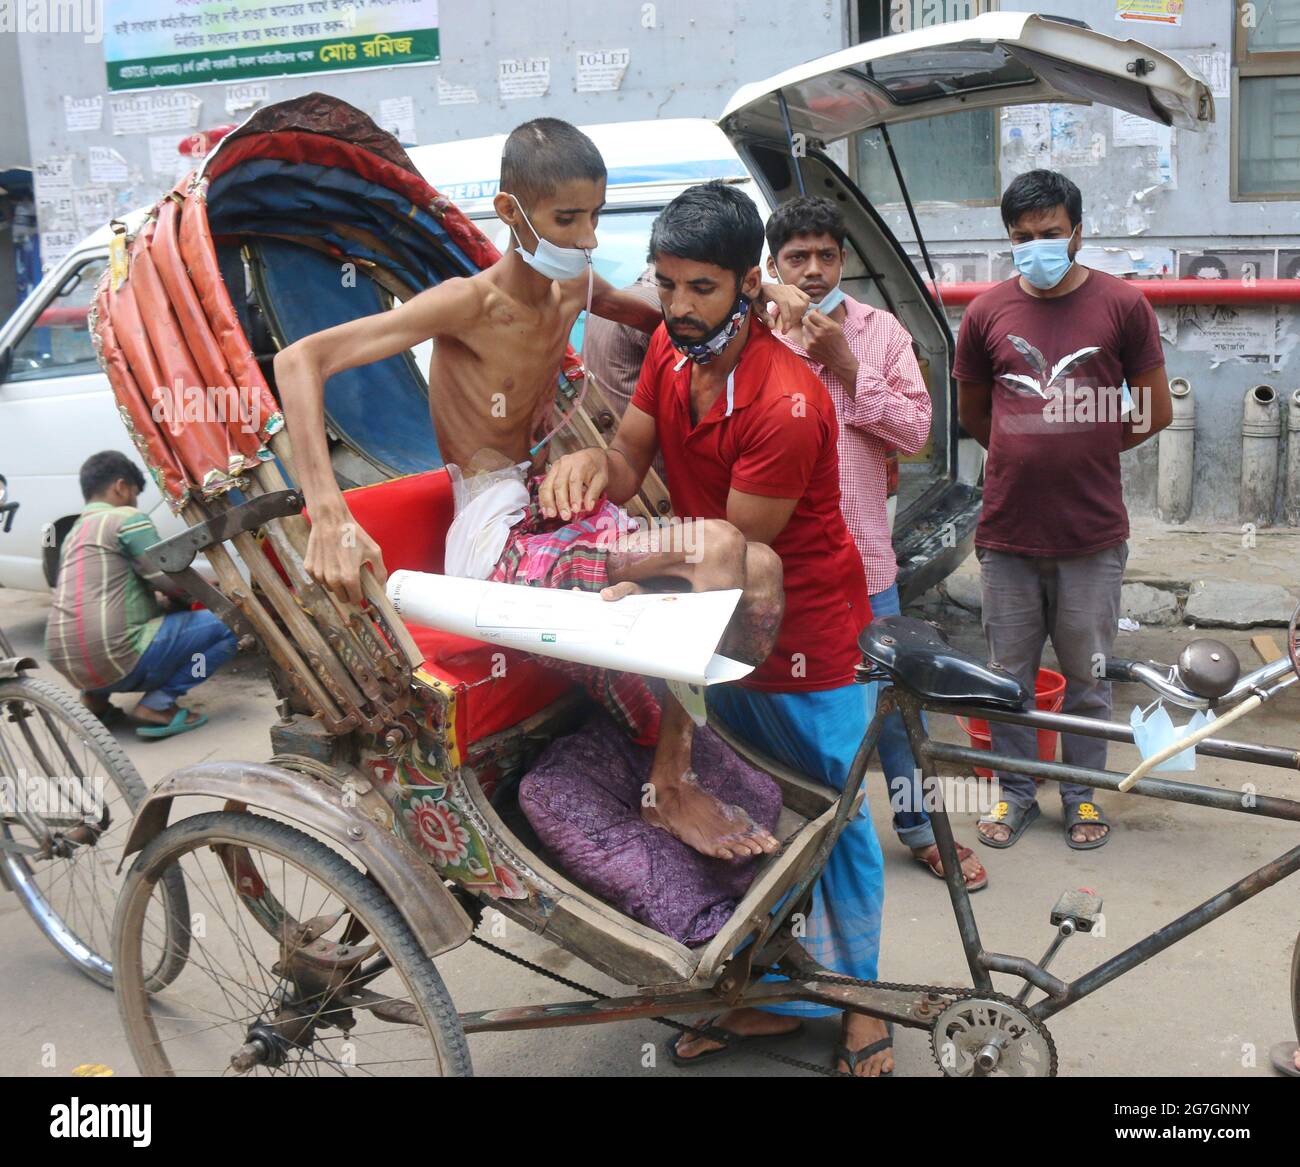 Julio de 14,2021. Dhaka, Bangladesh: Saiful Islam, edad 14 años. Fue admitido en la unidad de quemaduras del Hospital Médico de Dhaka durante tres meses y veinte días Foto de stock